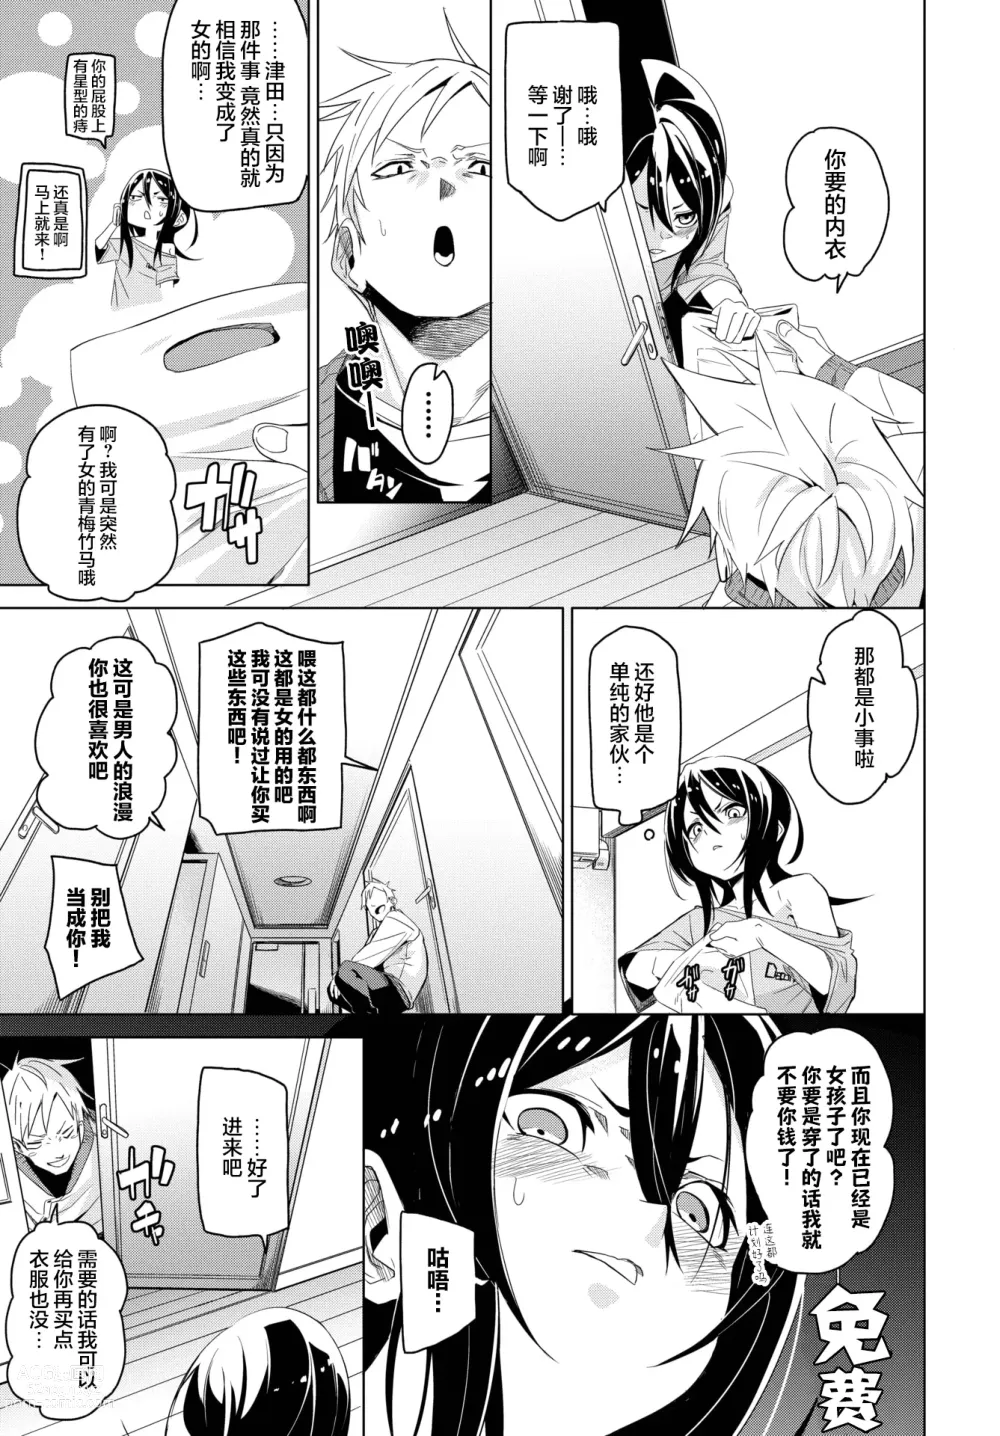 Page 2 of manga Kawatchatta!!